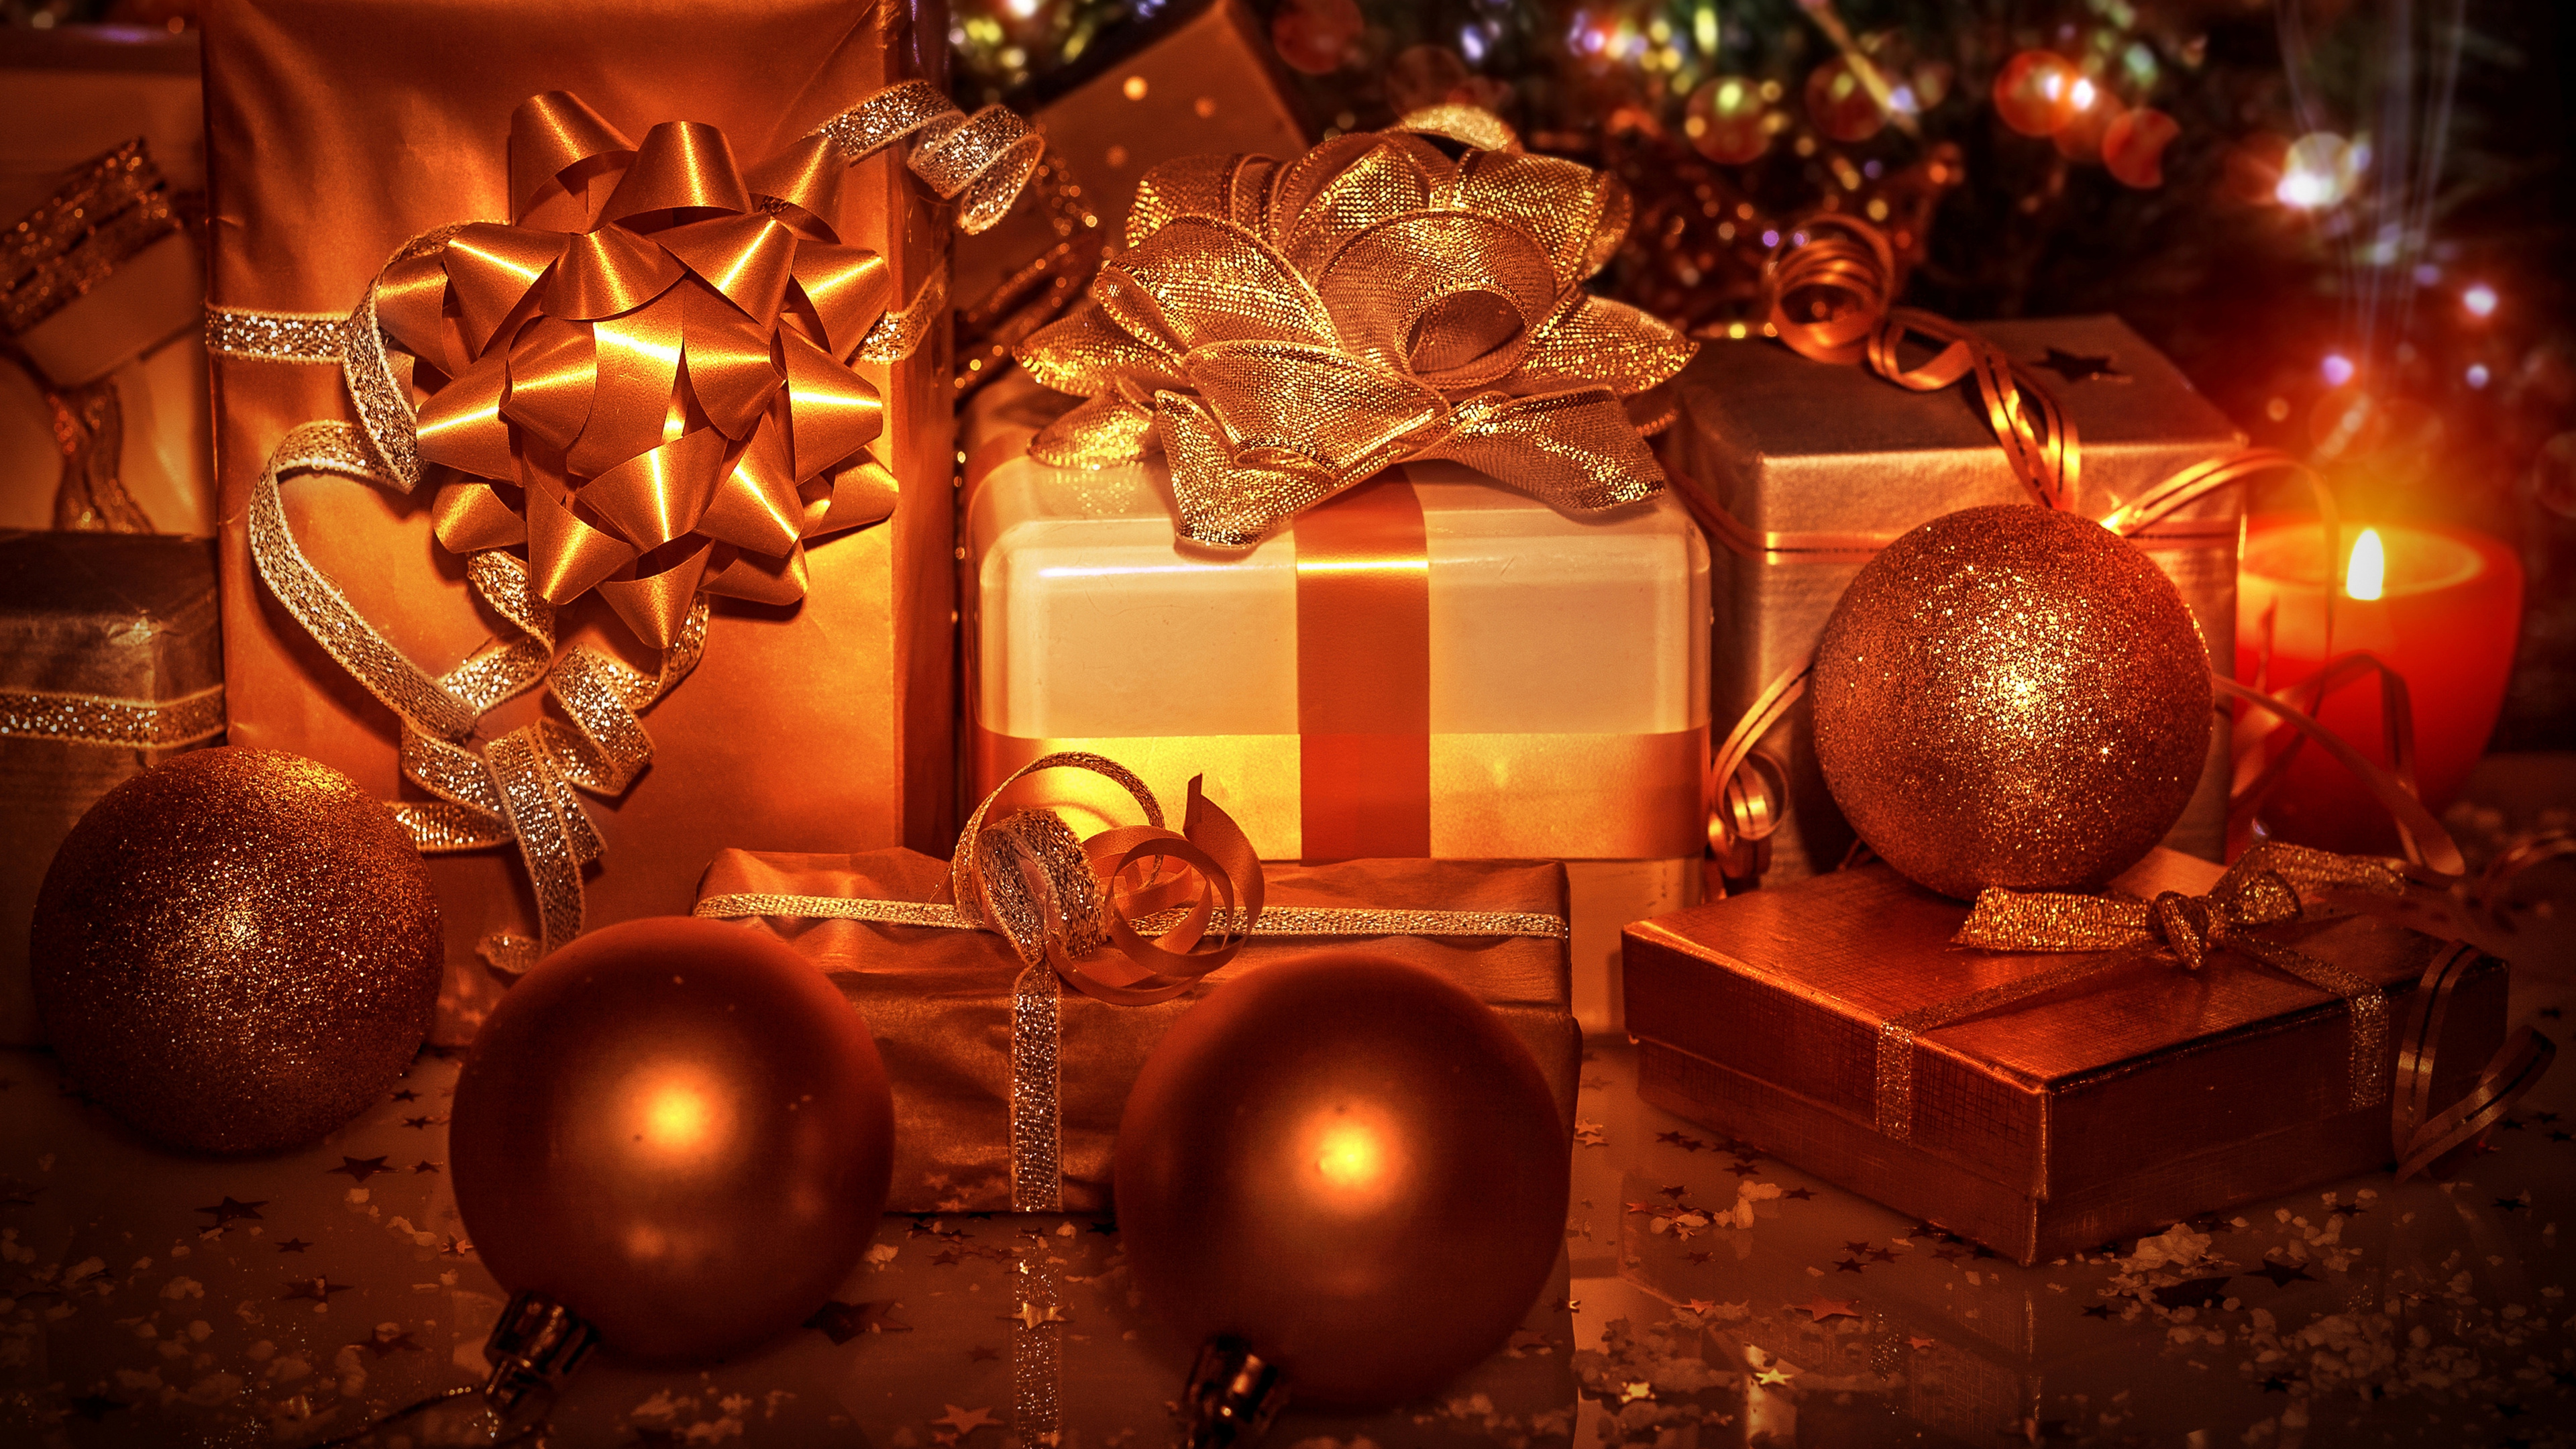 Weihnachten, Christmas Ornament, Weihnachtsbaum, Neujahr, Weihnachtsdekoration. Wallpaper in 3840x2160 Resolution